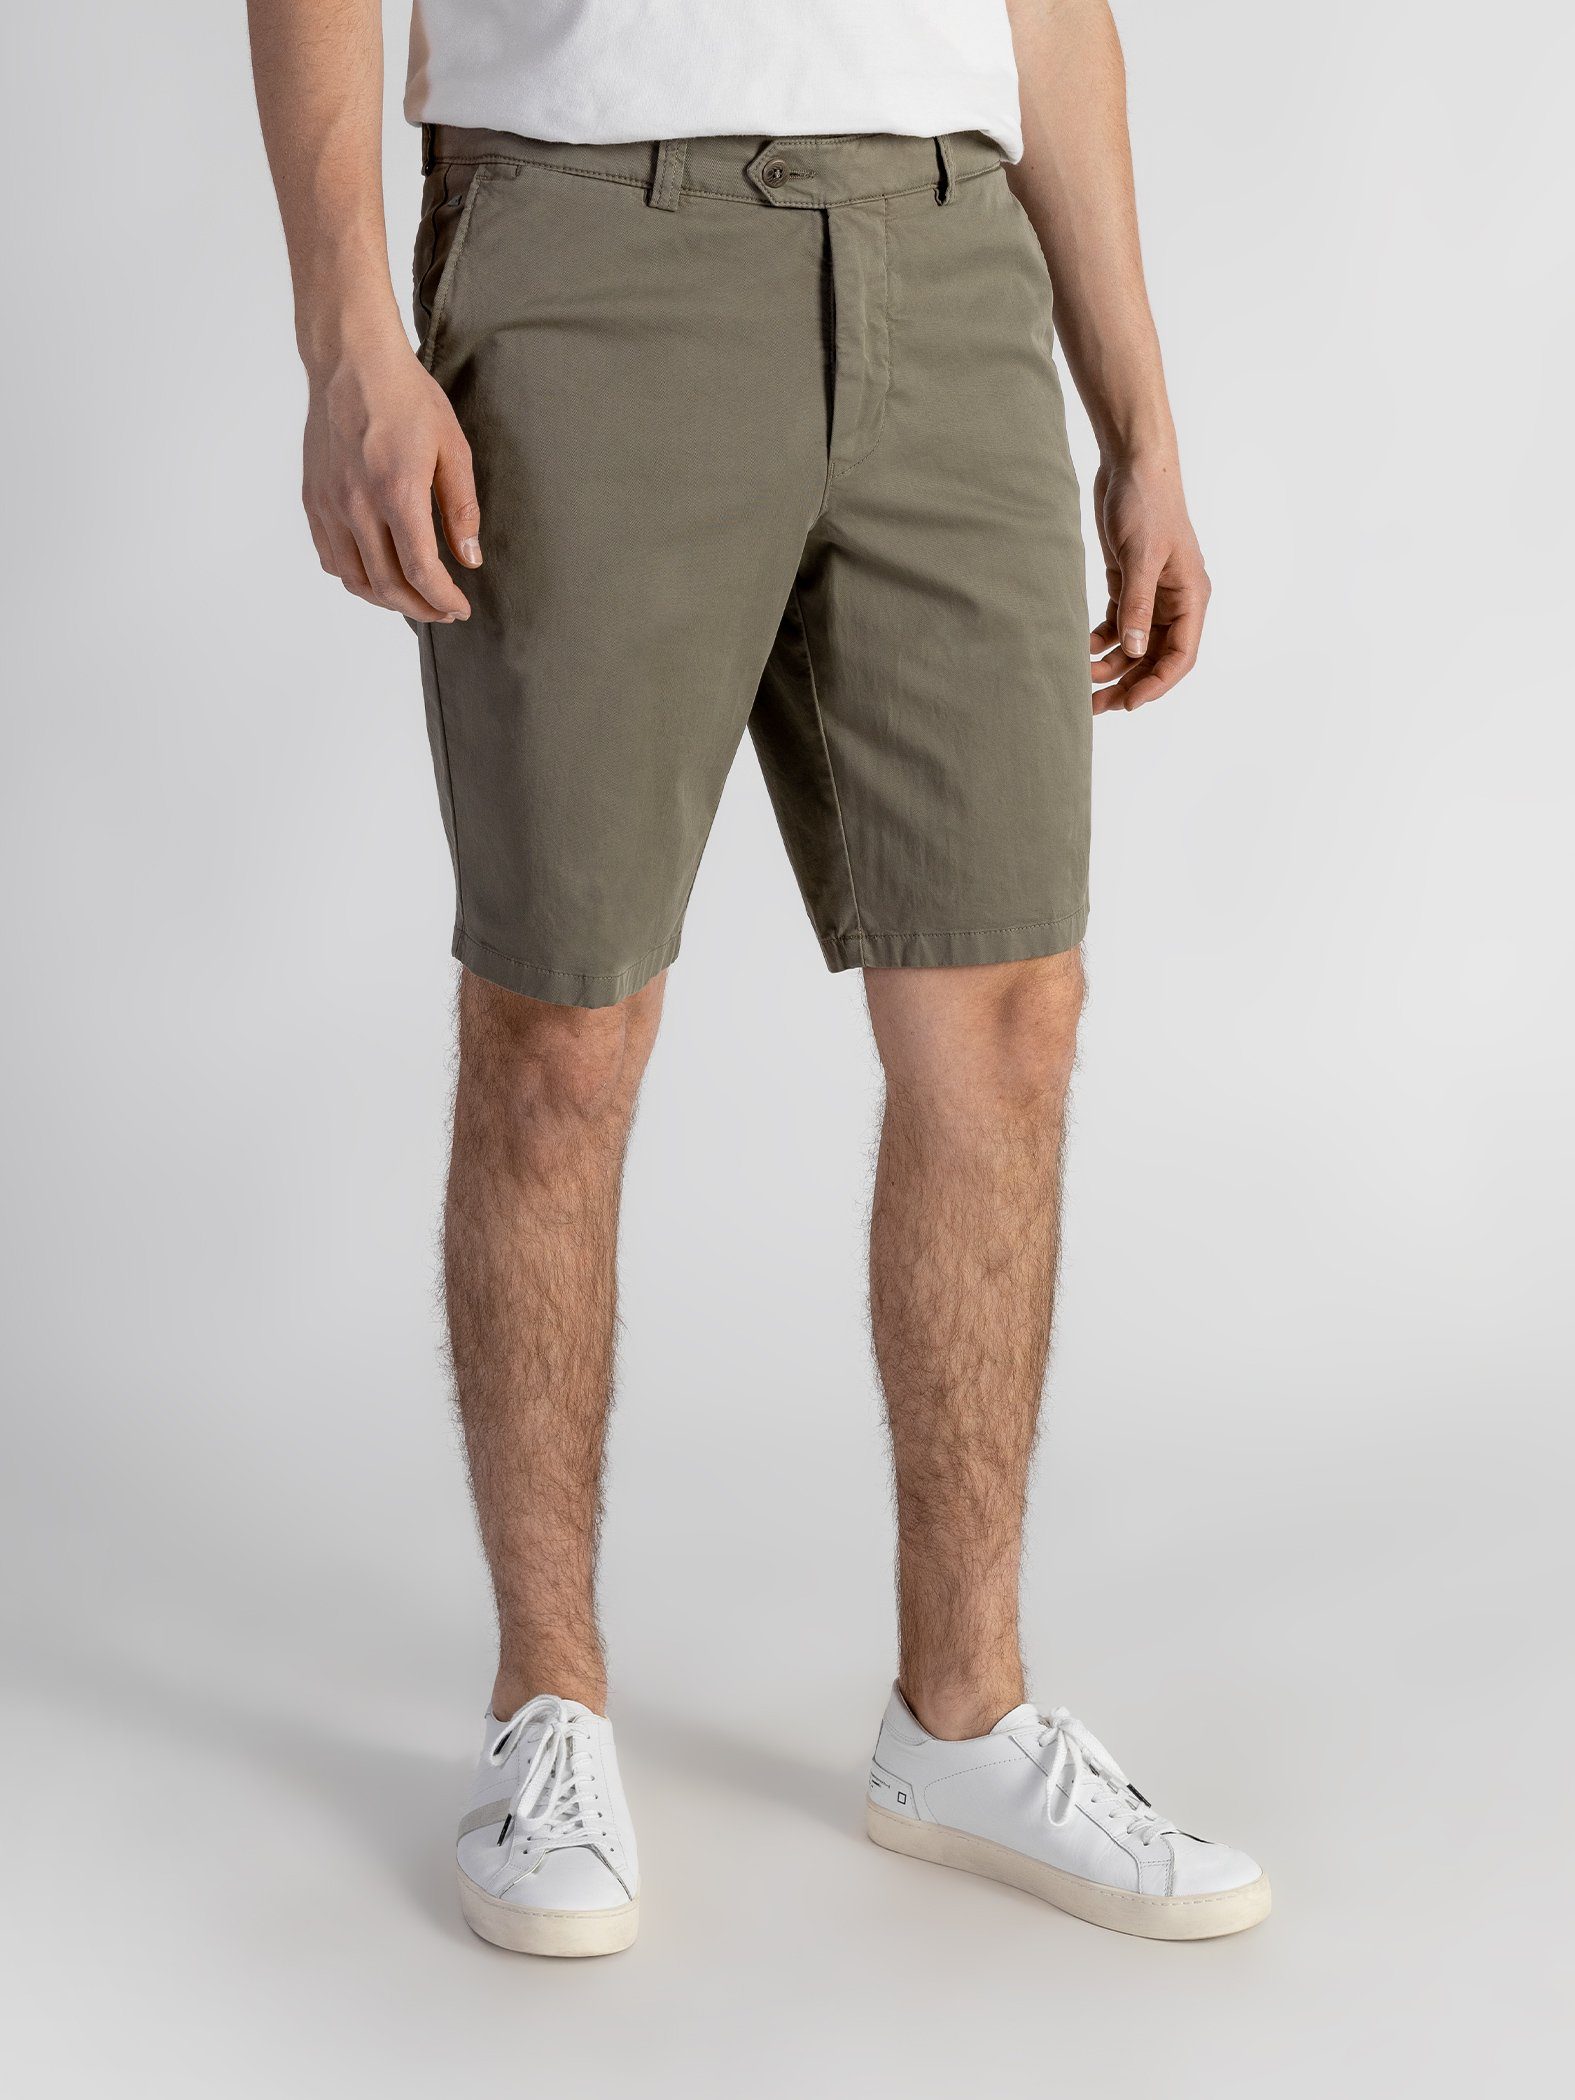 mit TwoMates elastischem Shorts Bund, GOTS-zertifiziert olivgrün Shorts Farbauswahl,